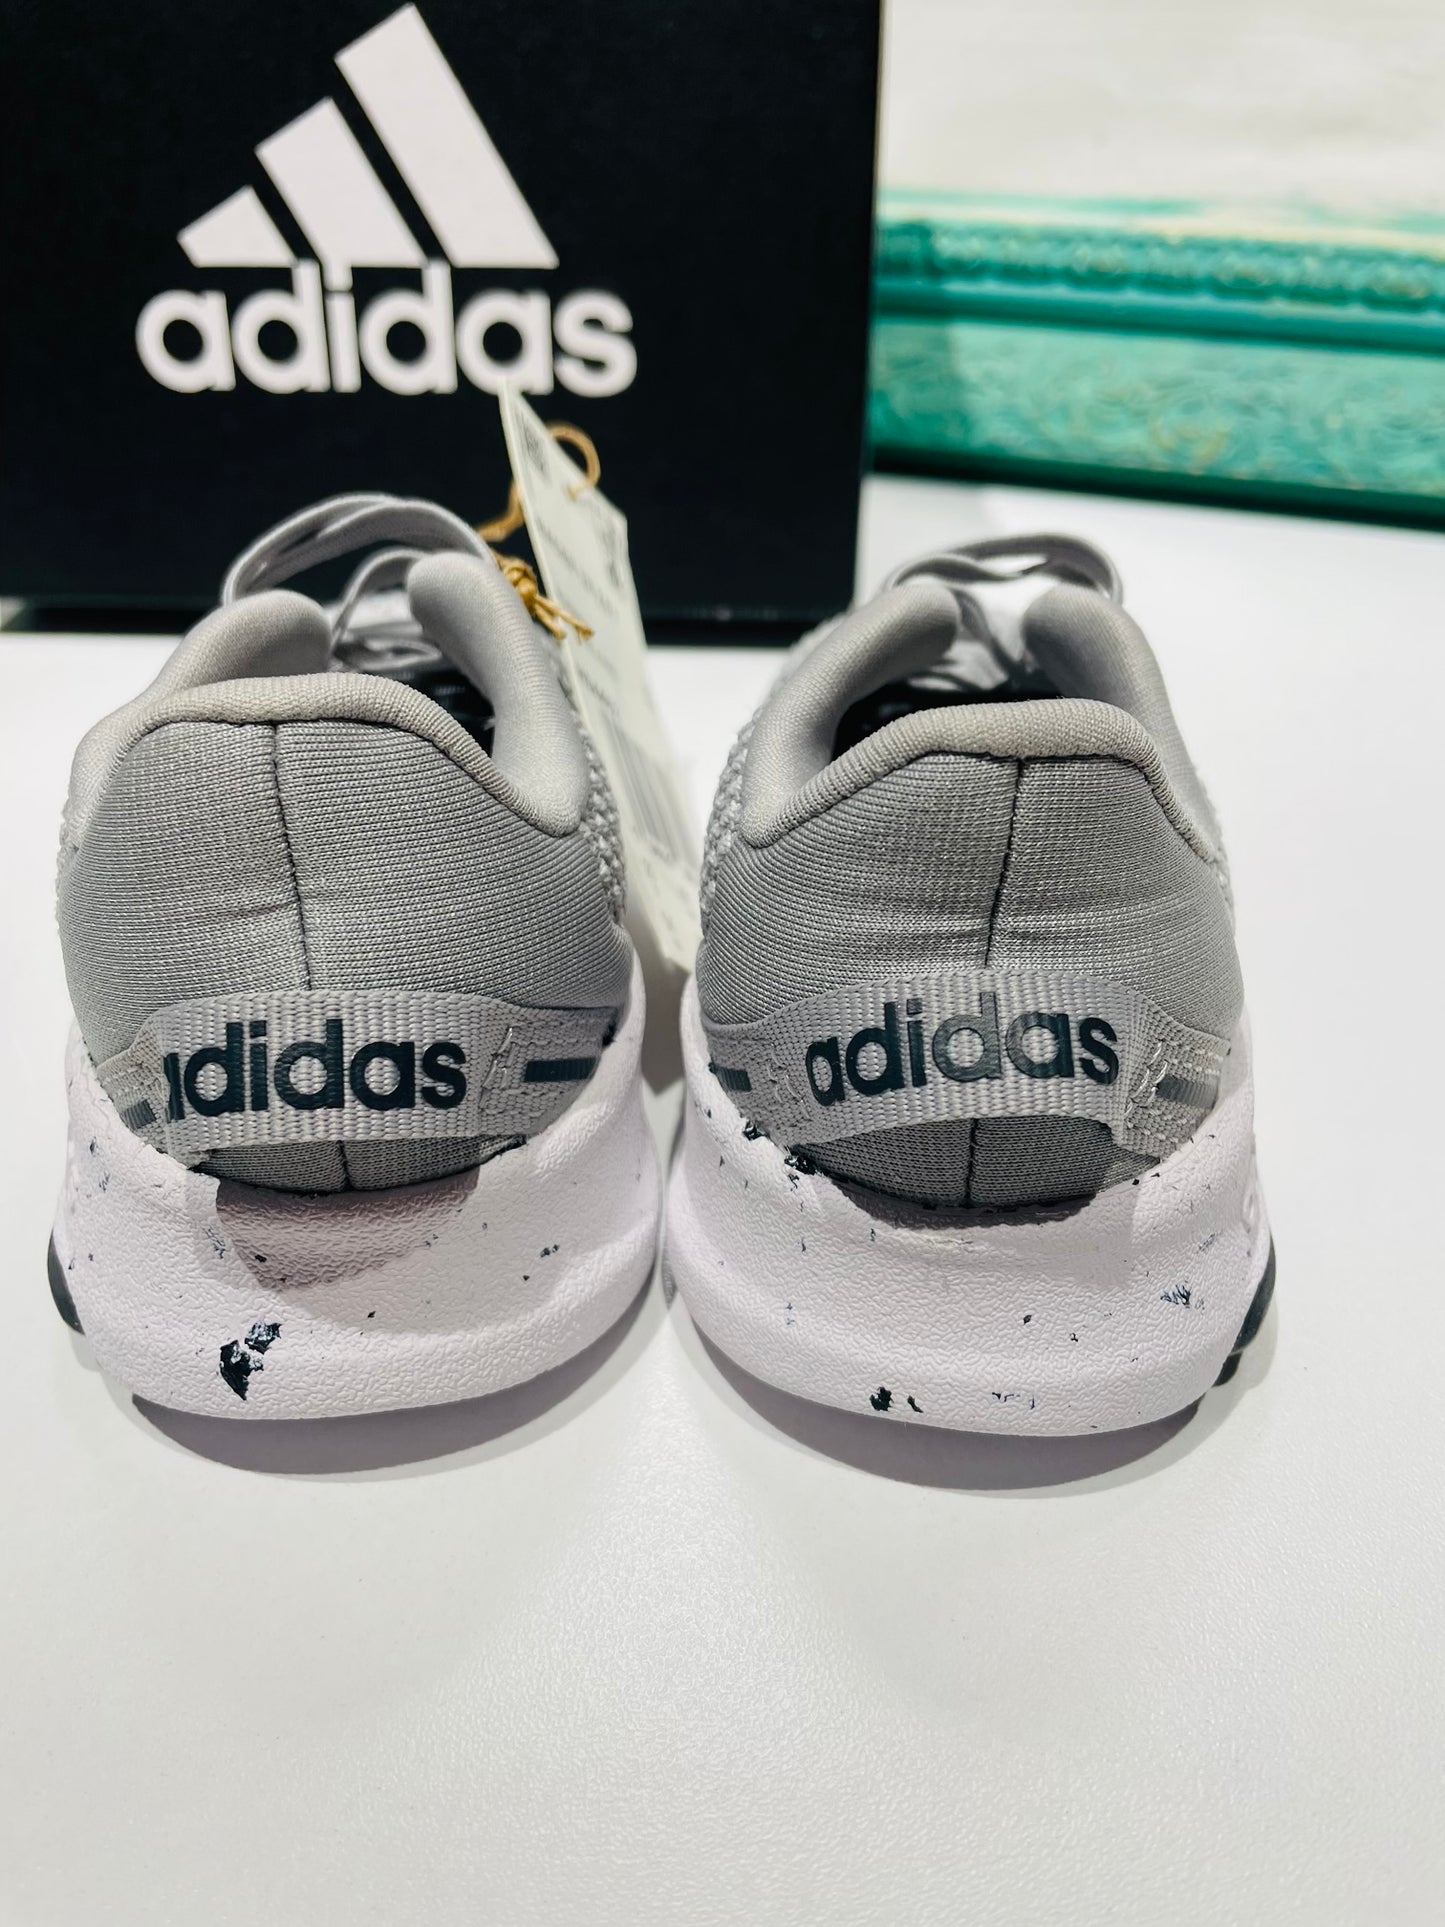 Adidas kids sneakers